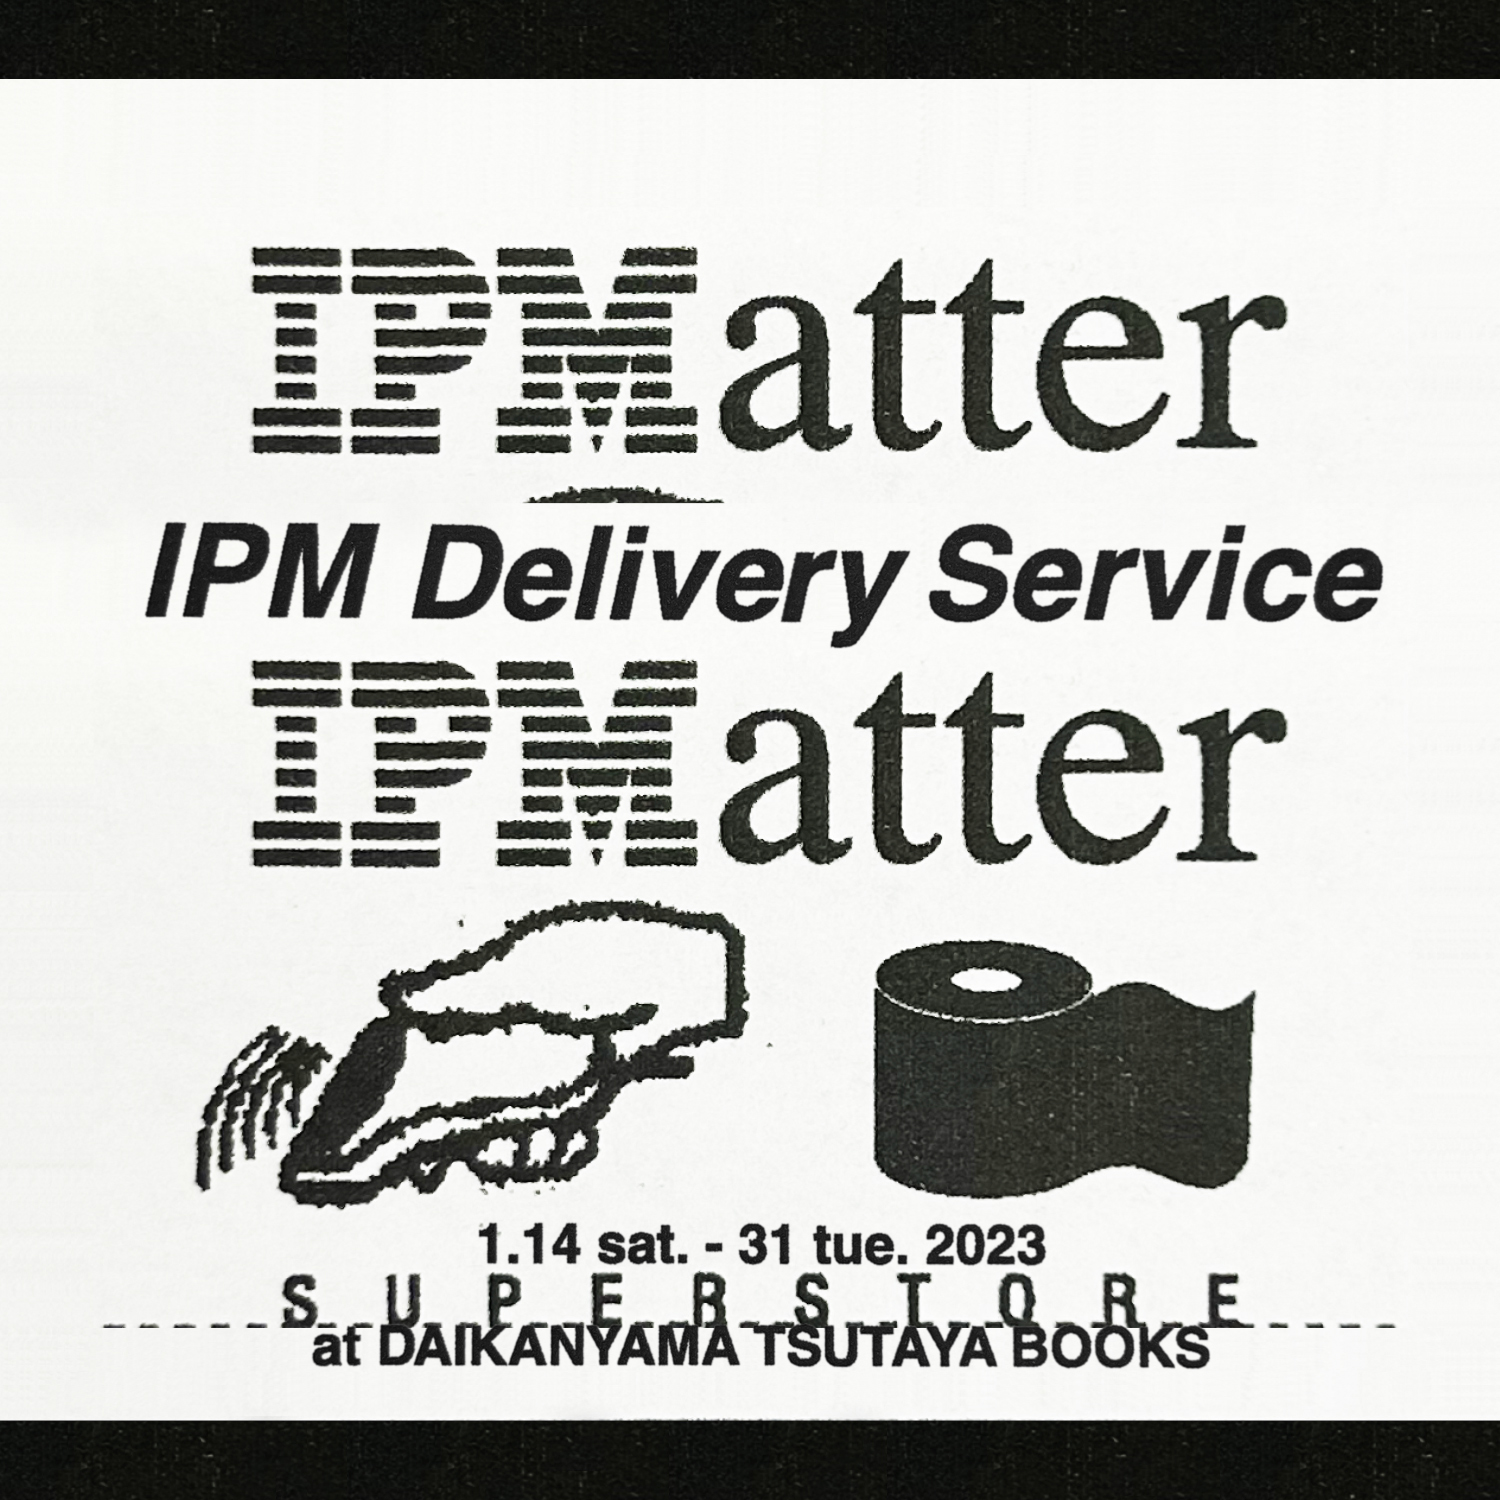 IPMatter